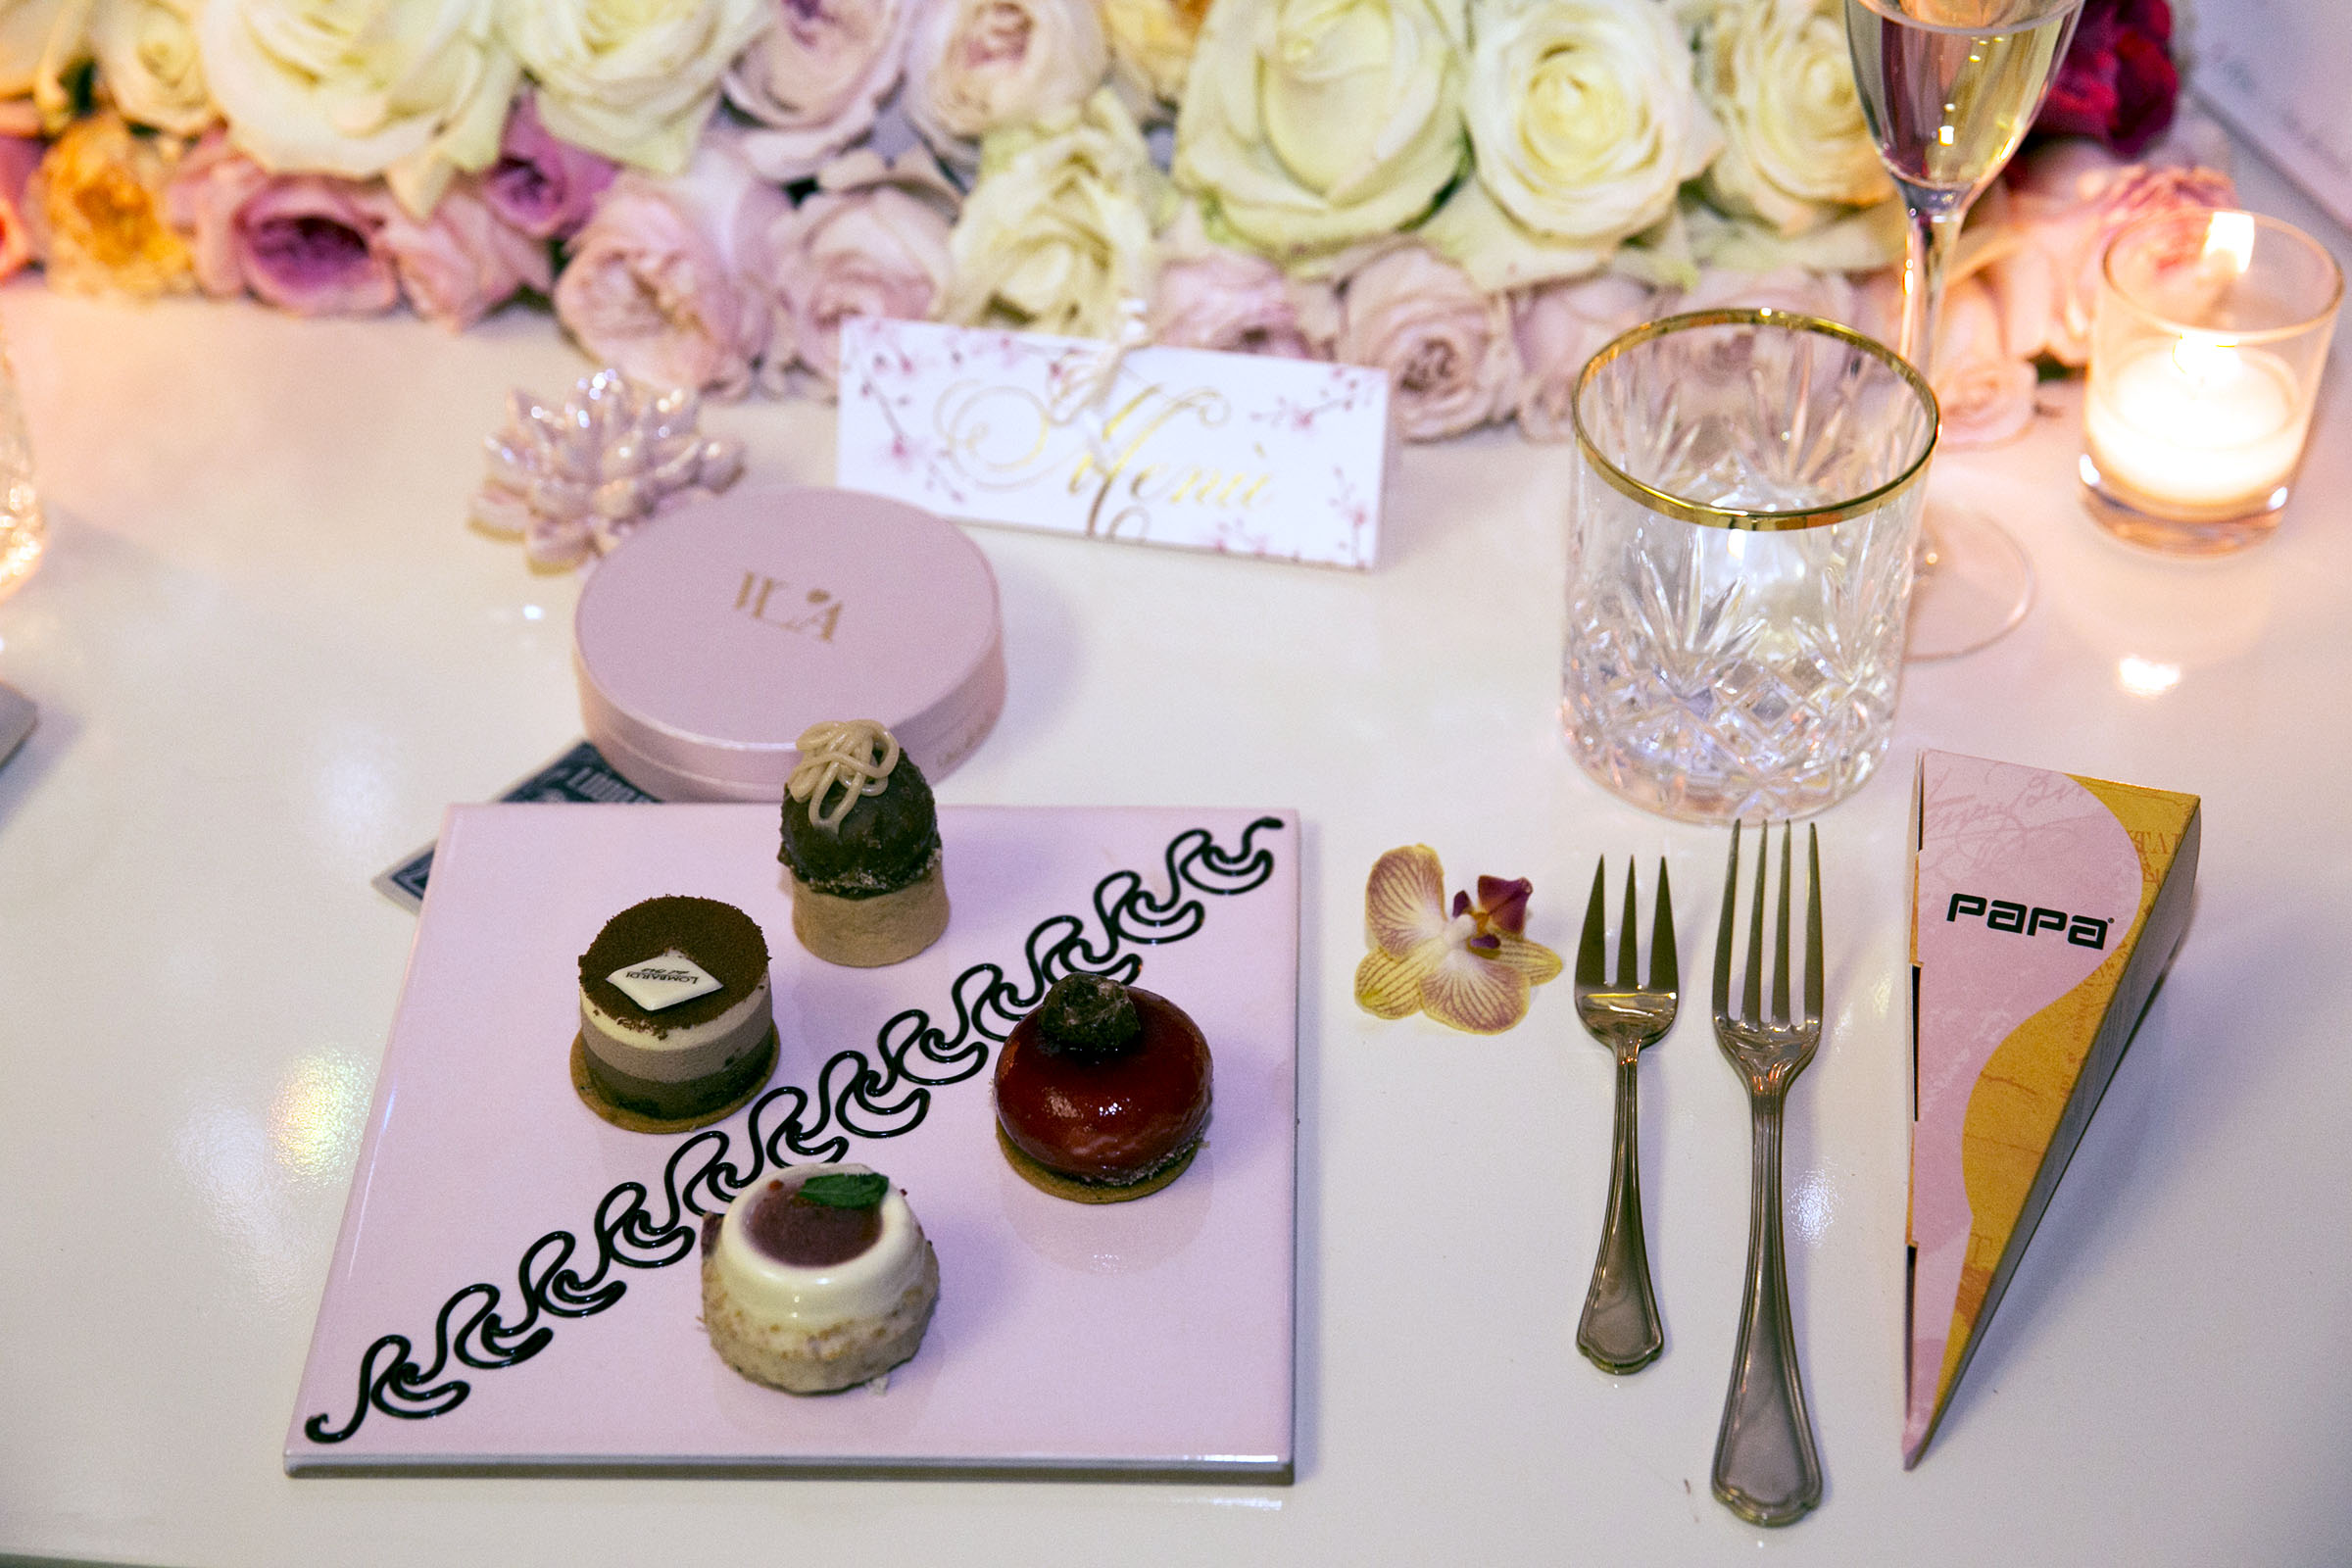 W L'AMORE: la cena/sogno di Cira Lombardo wedding planner